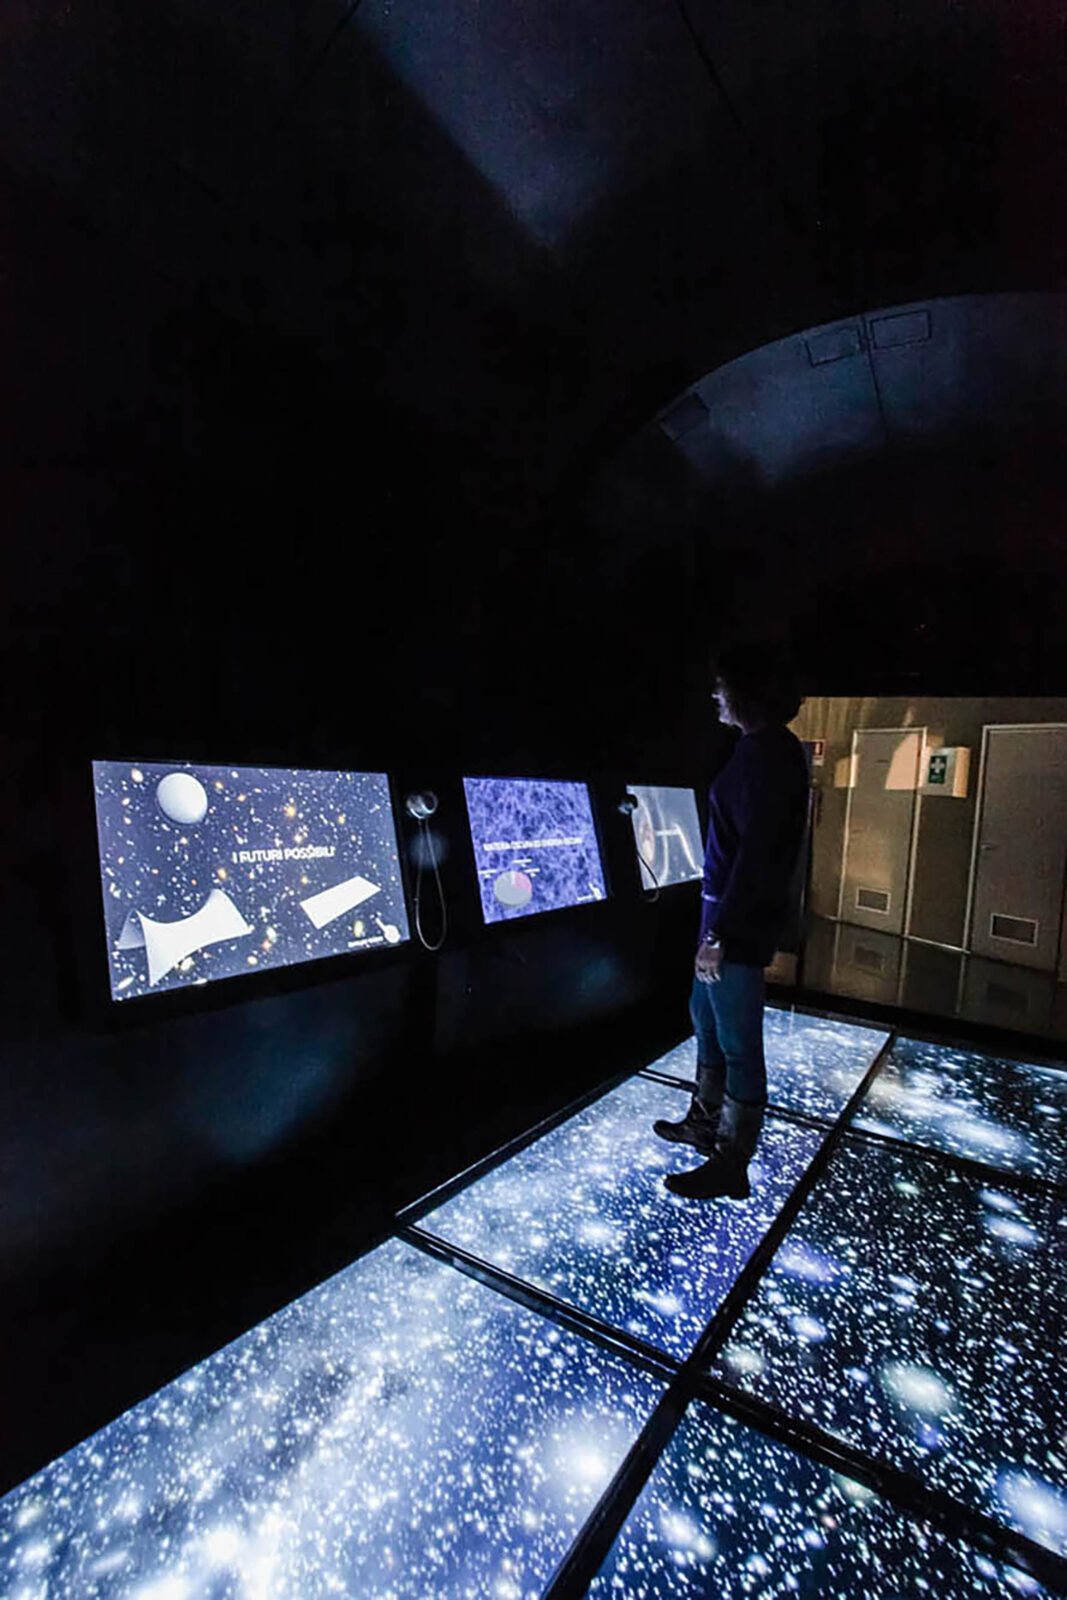 persona davanti exhibit multimediali che rappresentano Astronomia e Spazio, nel percorso rinnovato da ett del planetario di torino